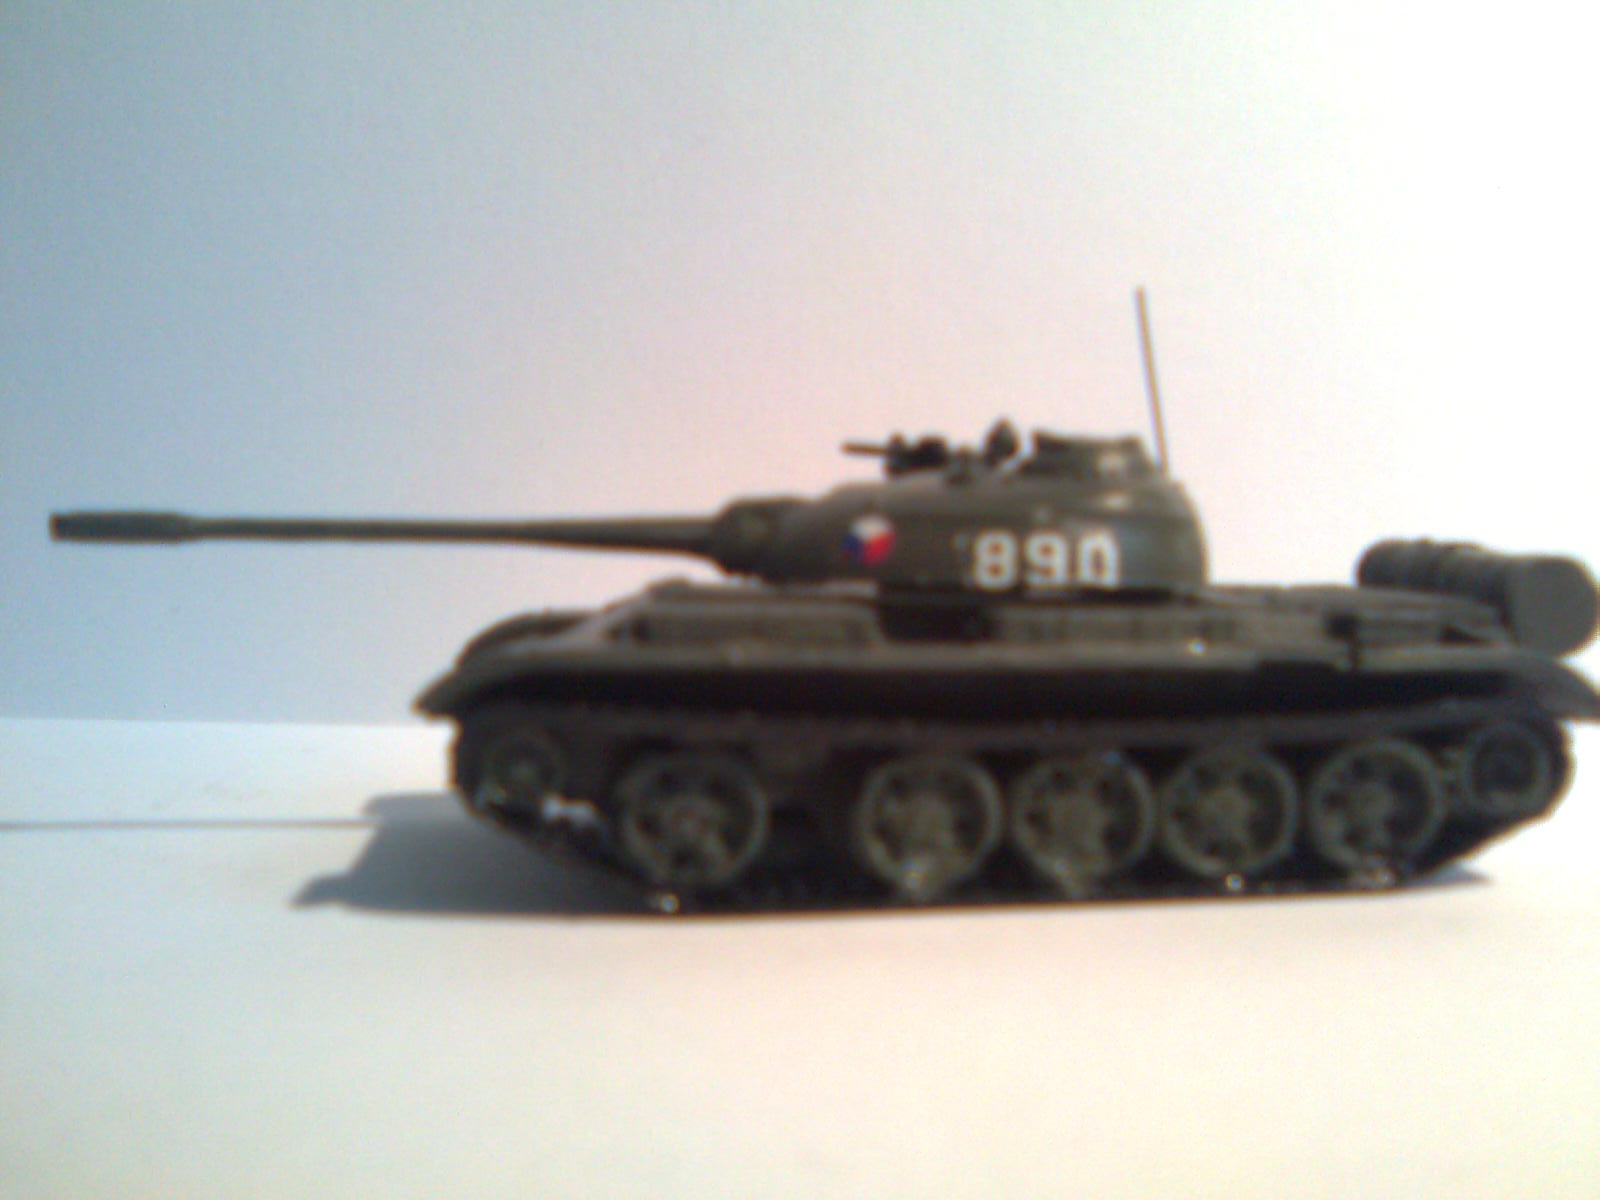 T 55